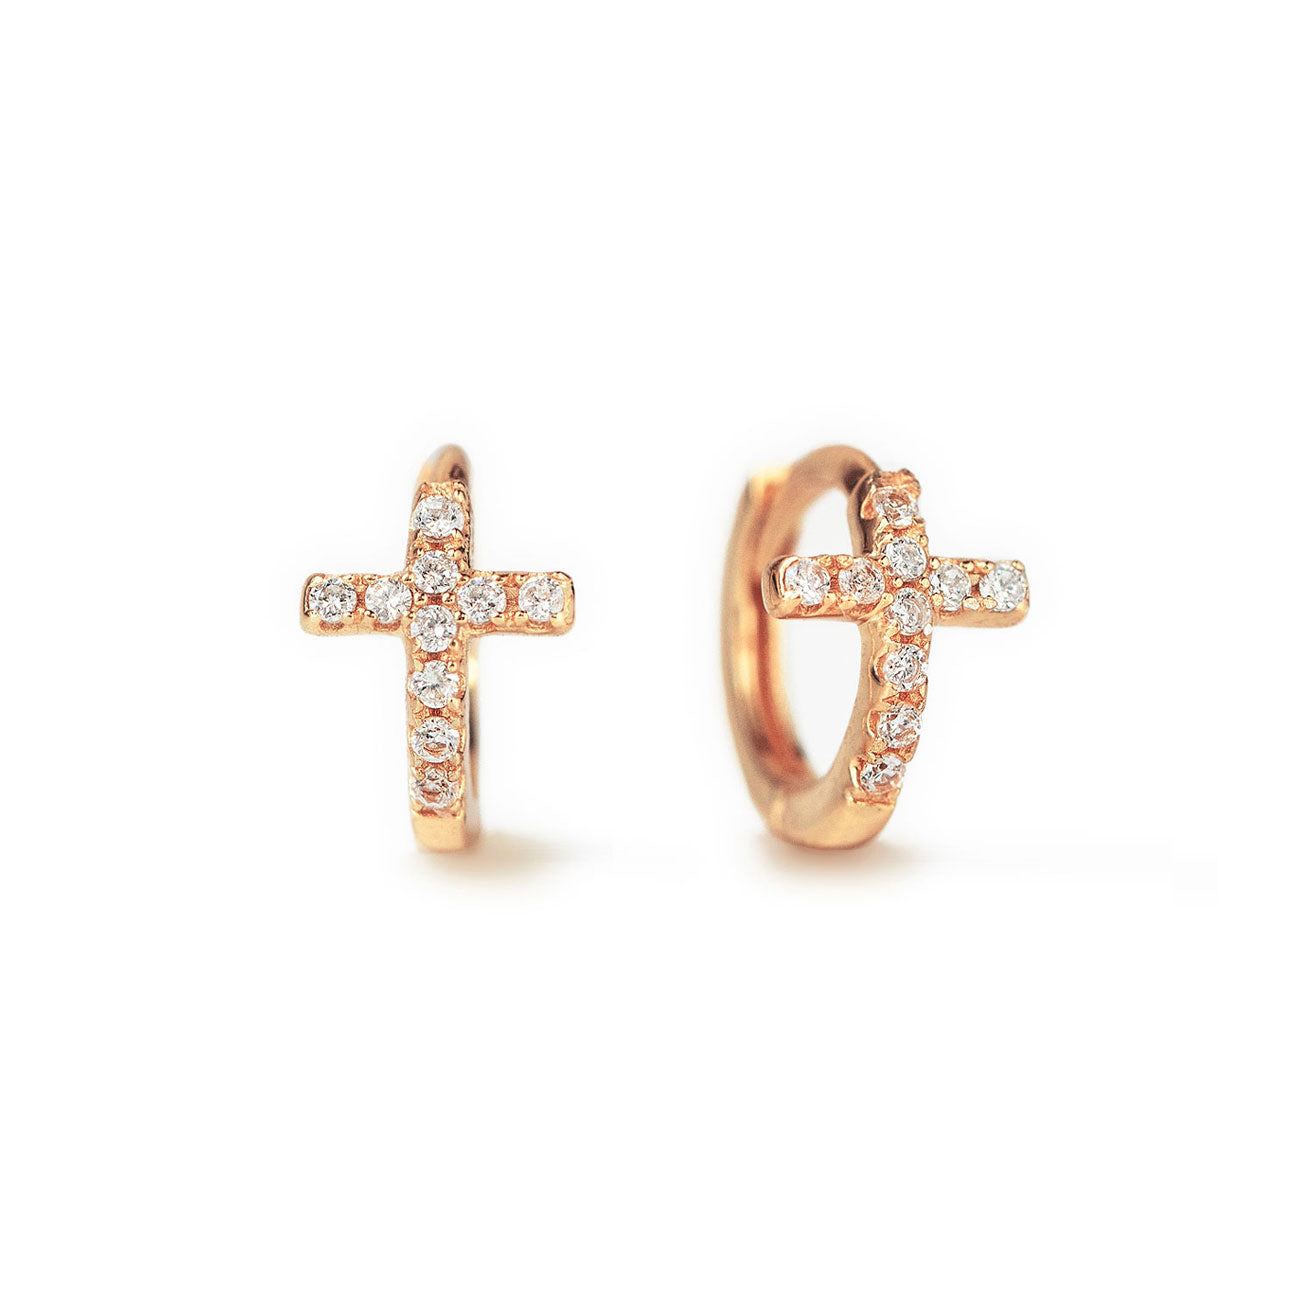 Pearled Cross Earrings Ruby Rose Gold  Gigi Clozeau  Jewelry